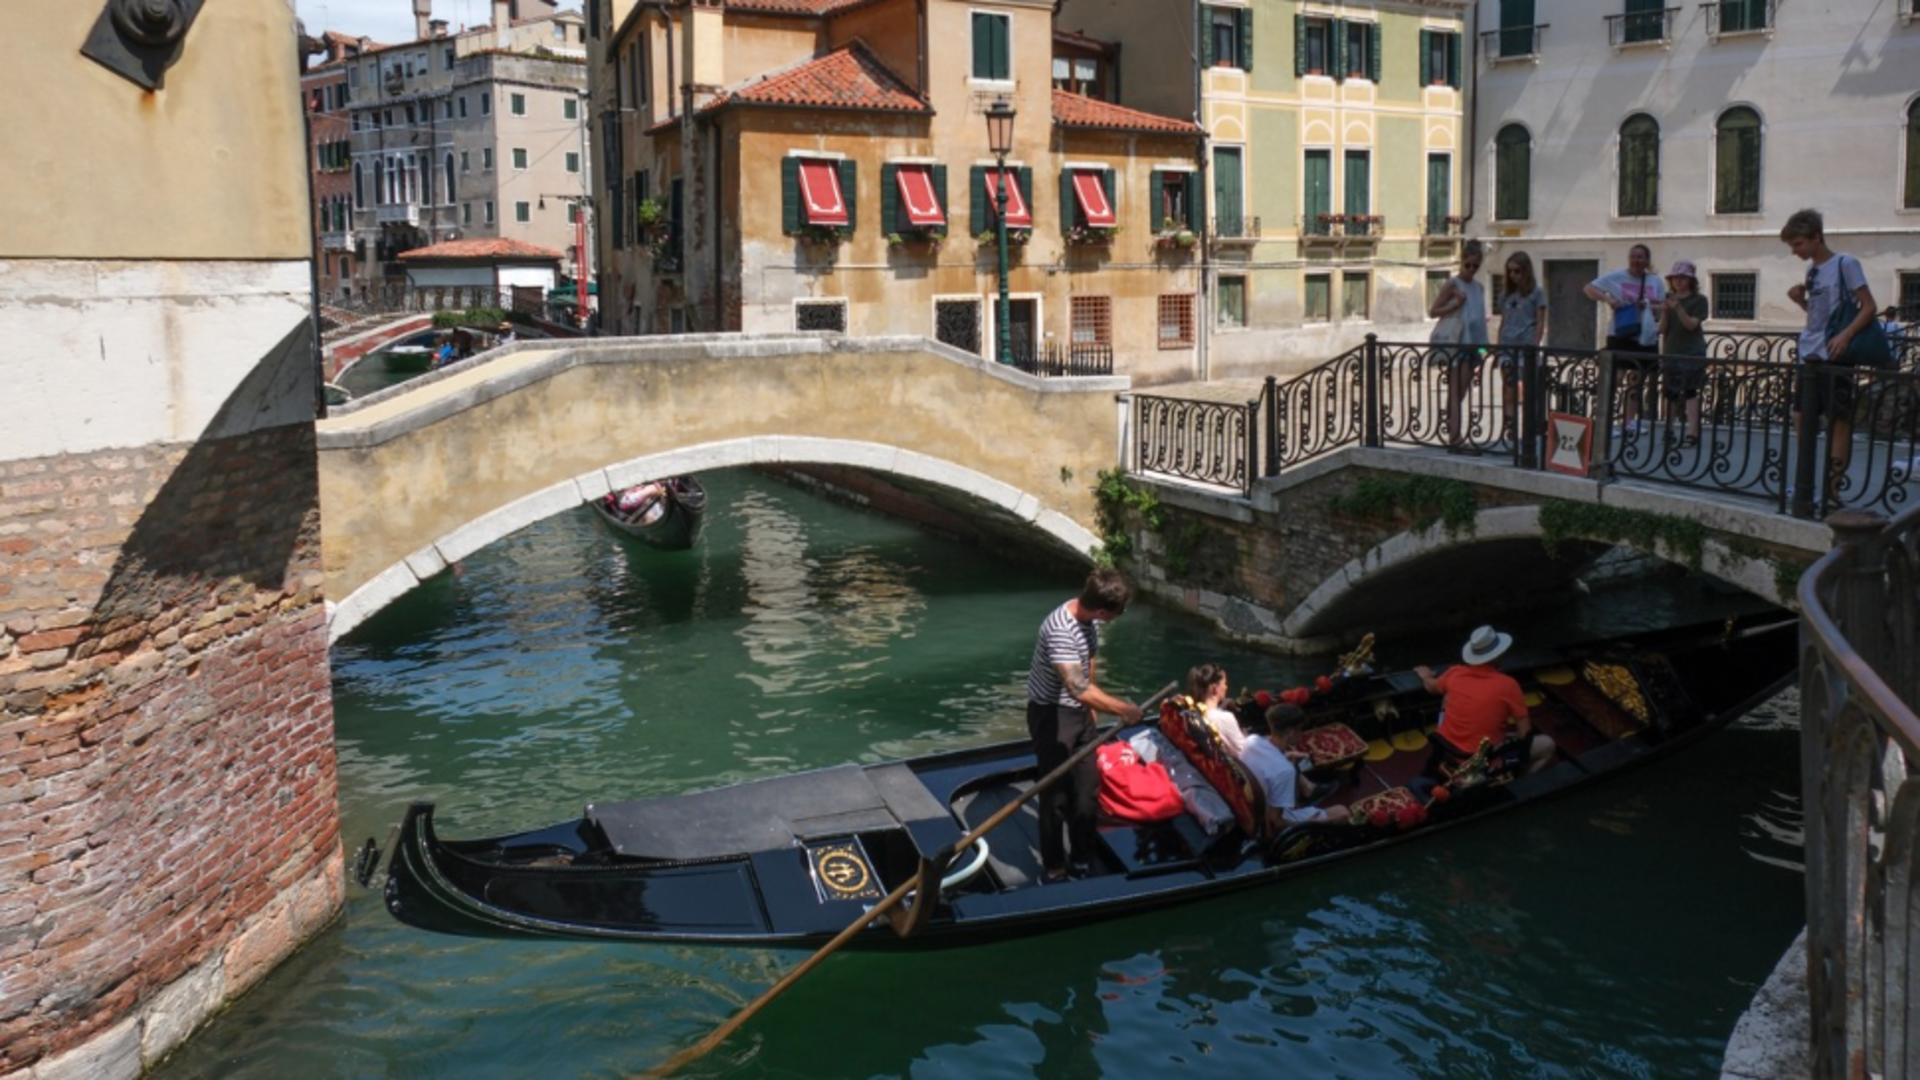 Prețuri de groază în Veneția: 80 de euro pentru o plimbare de jumătate de euro cu gondola, 45 de euro o zi de parcare. Turiștii sunt exasperați